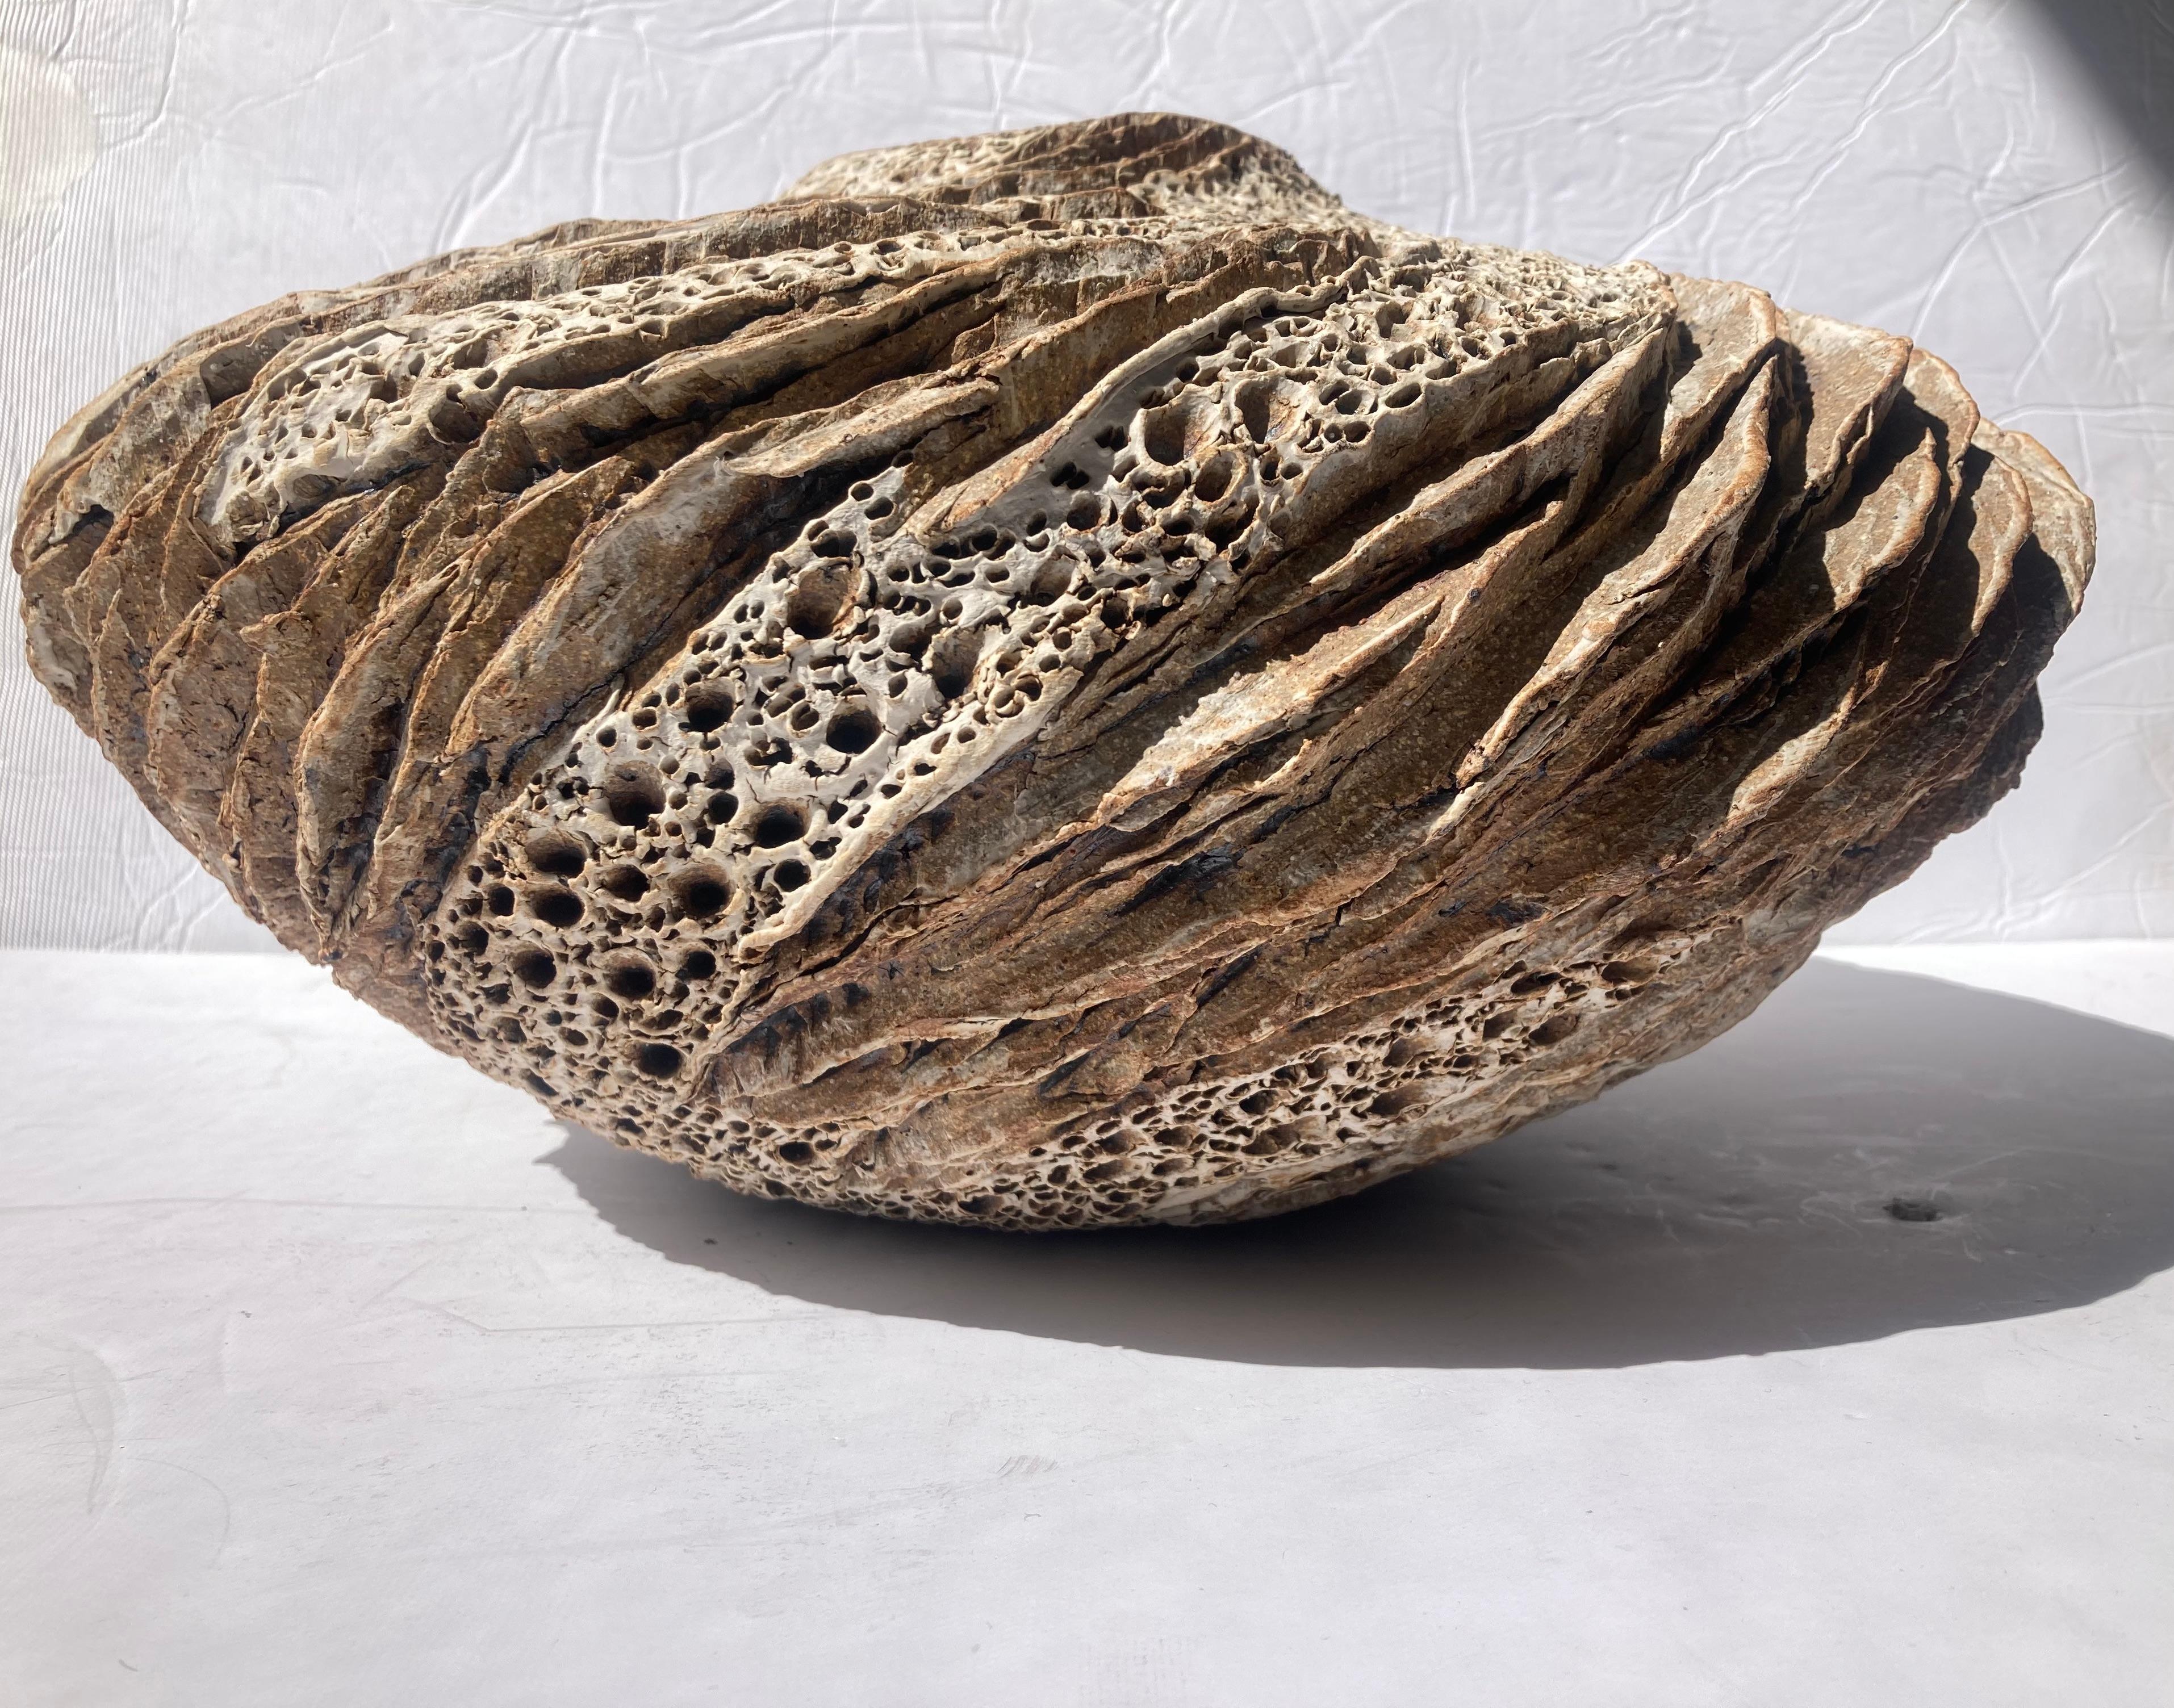 Erstaunliche organische Schale sehr texturiert von der bekannten Künstlerin Anne Goldman . Ihre Werke befinden sich in Museen, Collections und Organisationen auf der ganzen Welt.